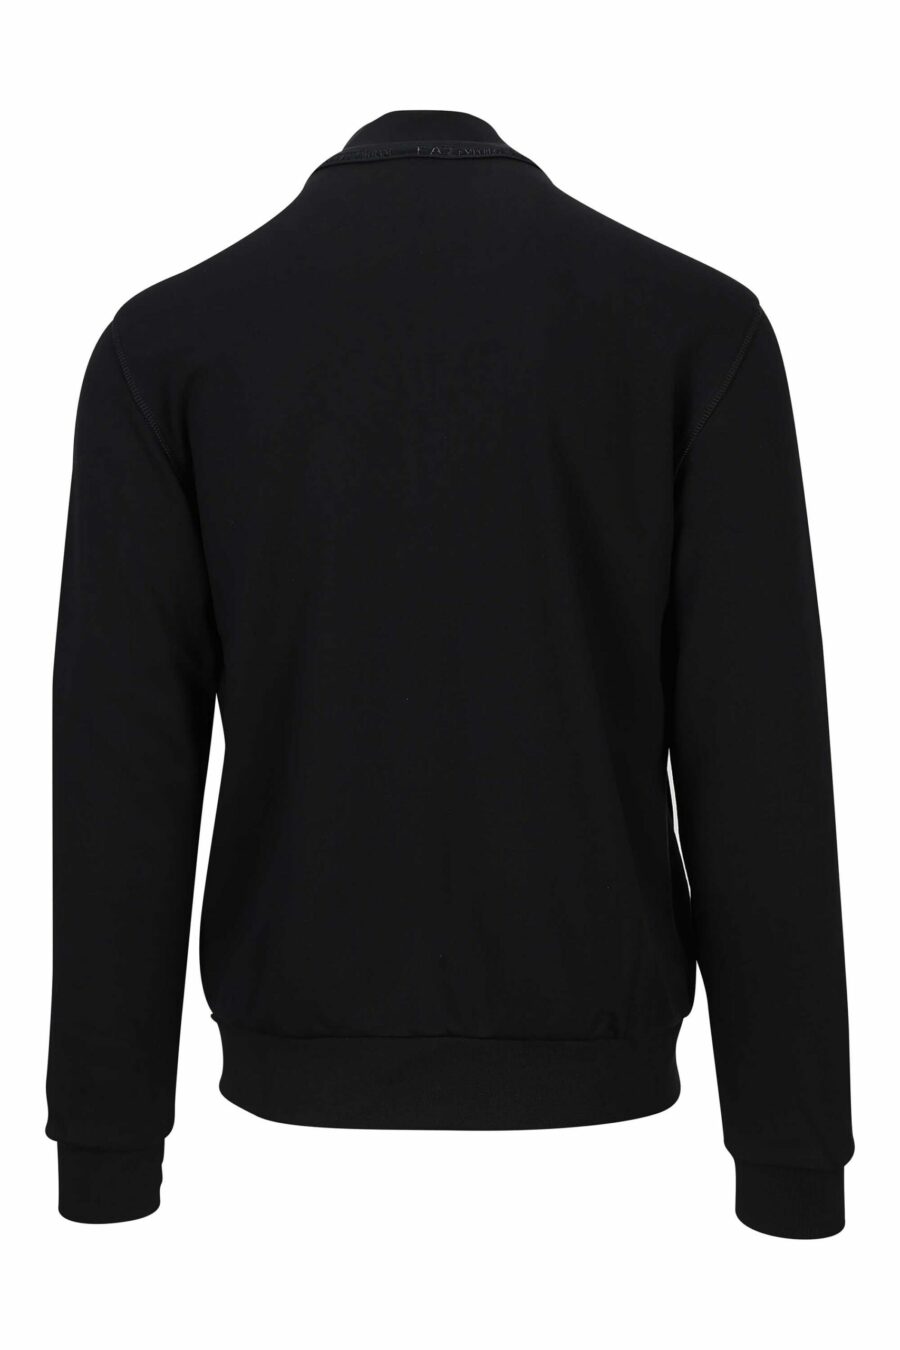 Schwarzes Sweatshirt mit Reißverschluss und Logo-Label "lux identity" - 8059823227899 3 skaliert